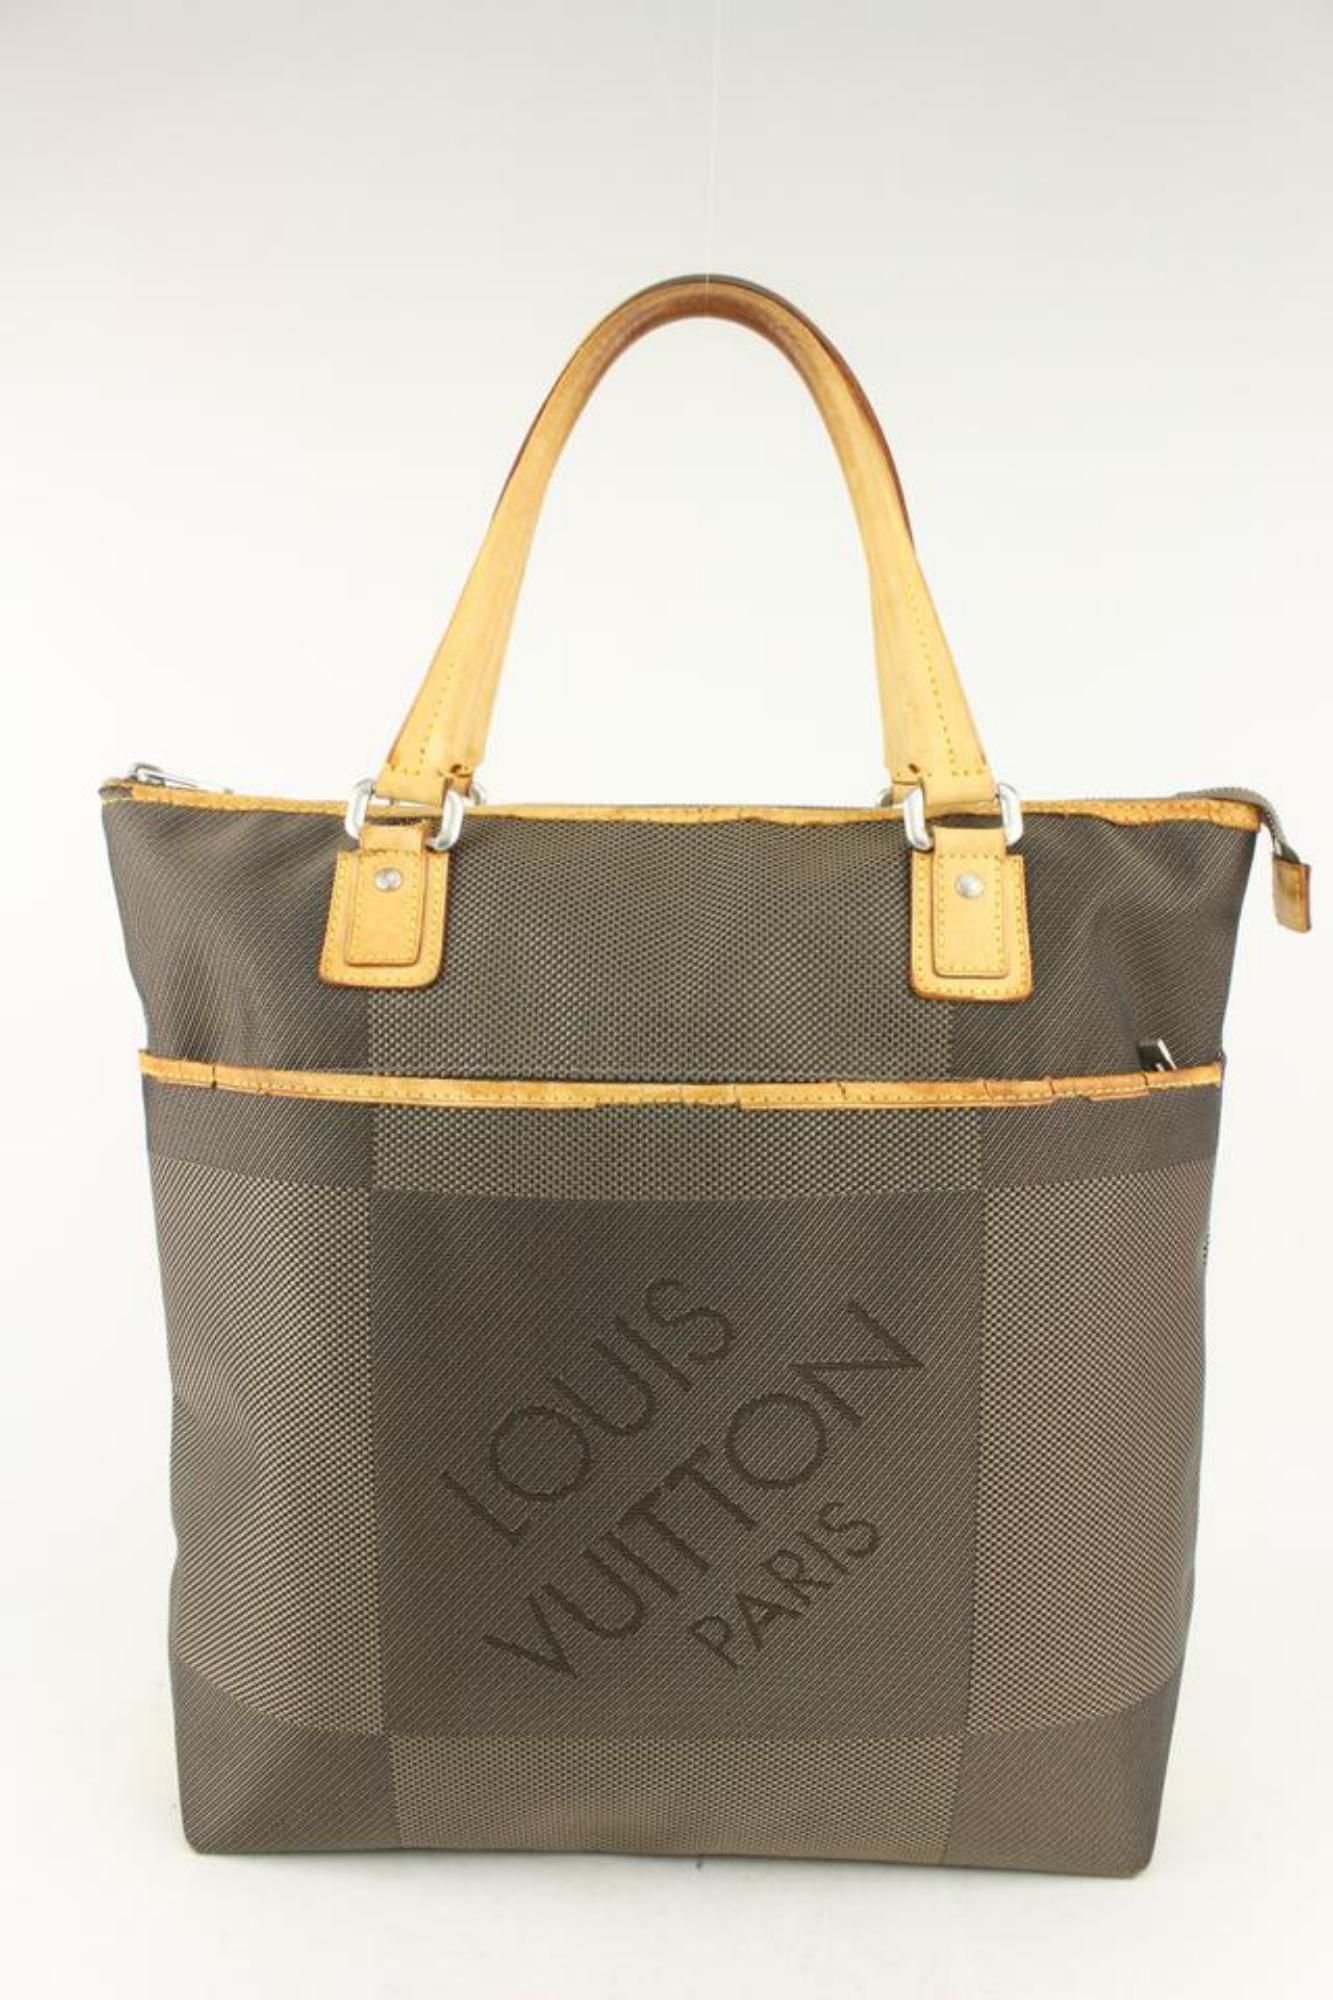 Louis Vuitton Damier Geant Cougar Tote bag 1028lv16 For Sale 1